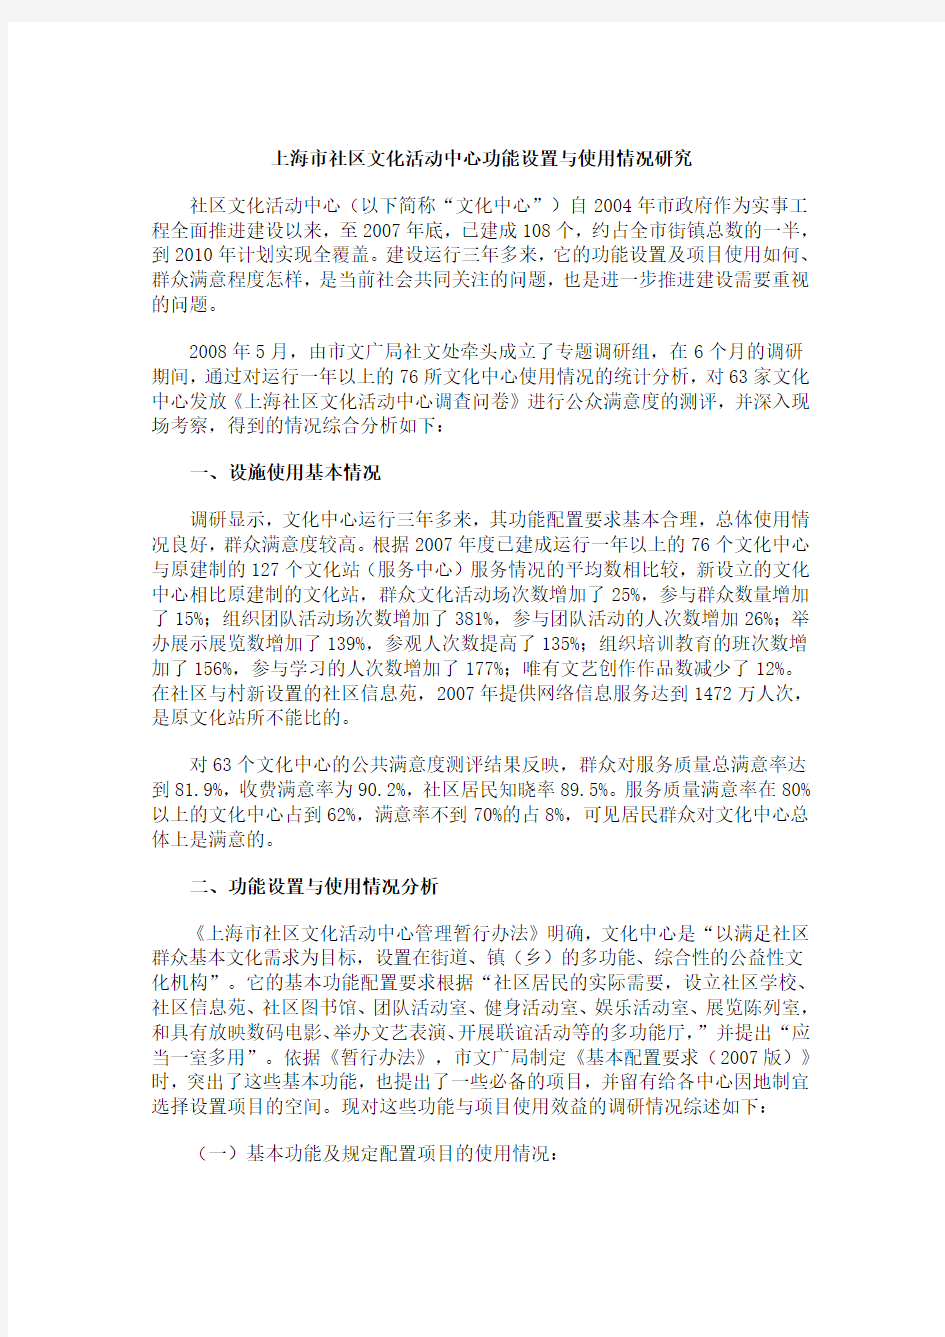 上海市社区文化活动中心功能设置与使用情况研究